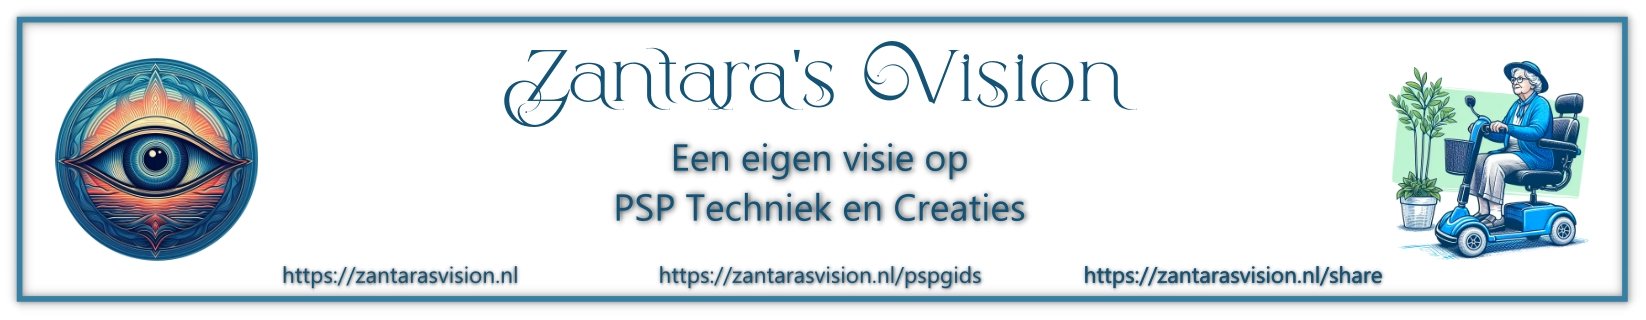 Zantara's Vision